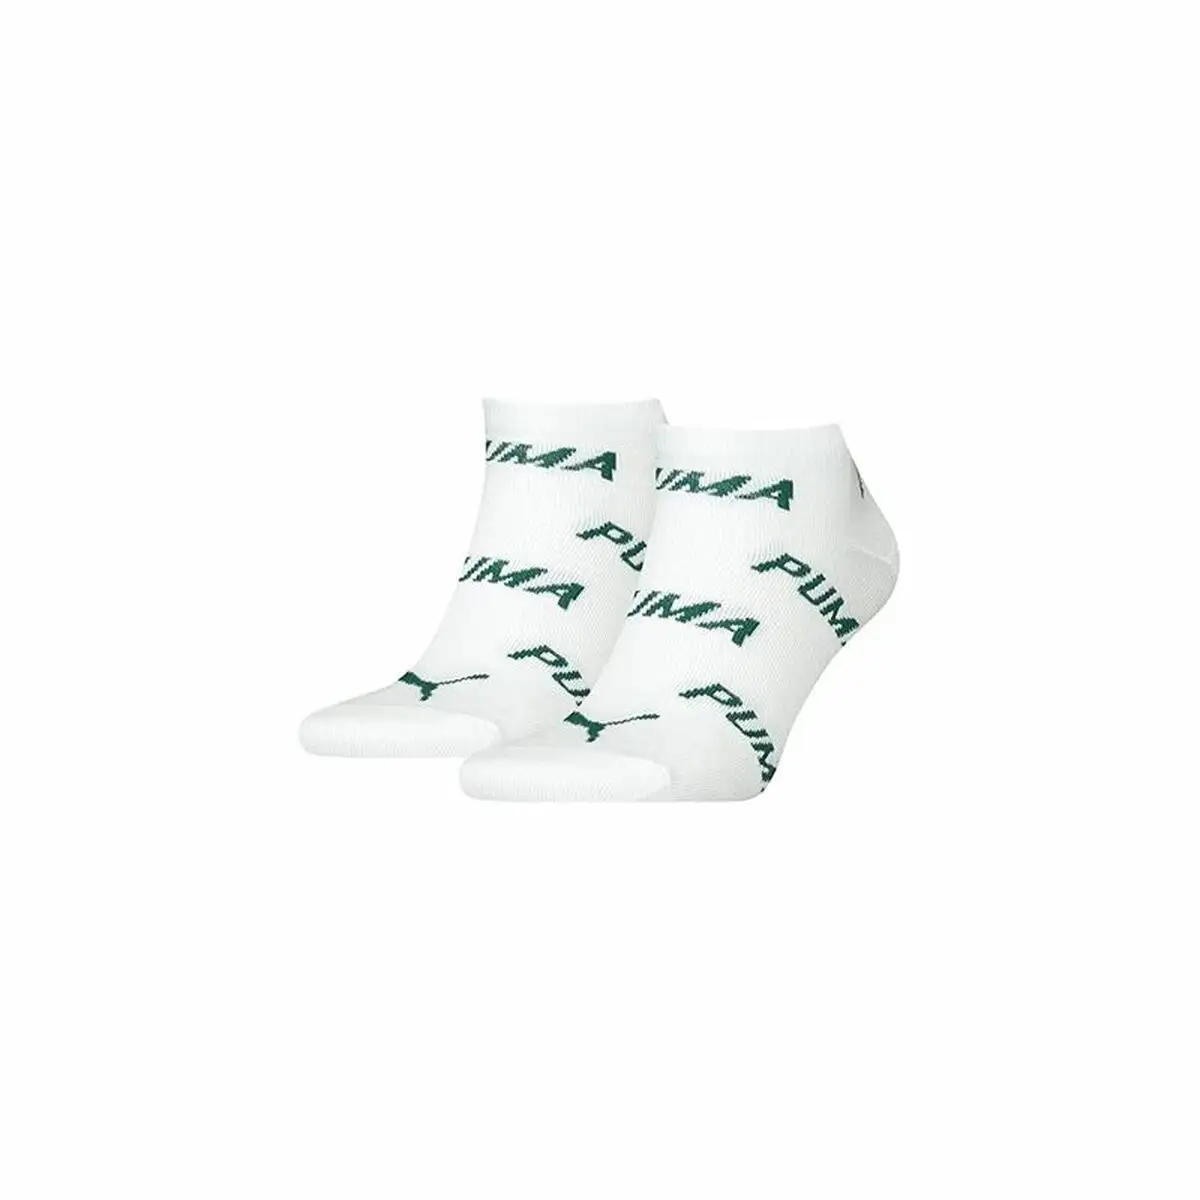 Chaussettes de sport puma bwt sneaker blanc_7080. Entrez dans DIAYTAR SENEGAL - Où Chaque Détail Compte. Explorez notre boutique en ligne pour trouver des produits de haute qualité, soigneusement choisis pour répondre à vos besoins et vos désirs.